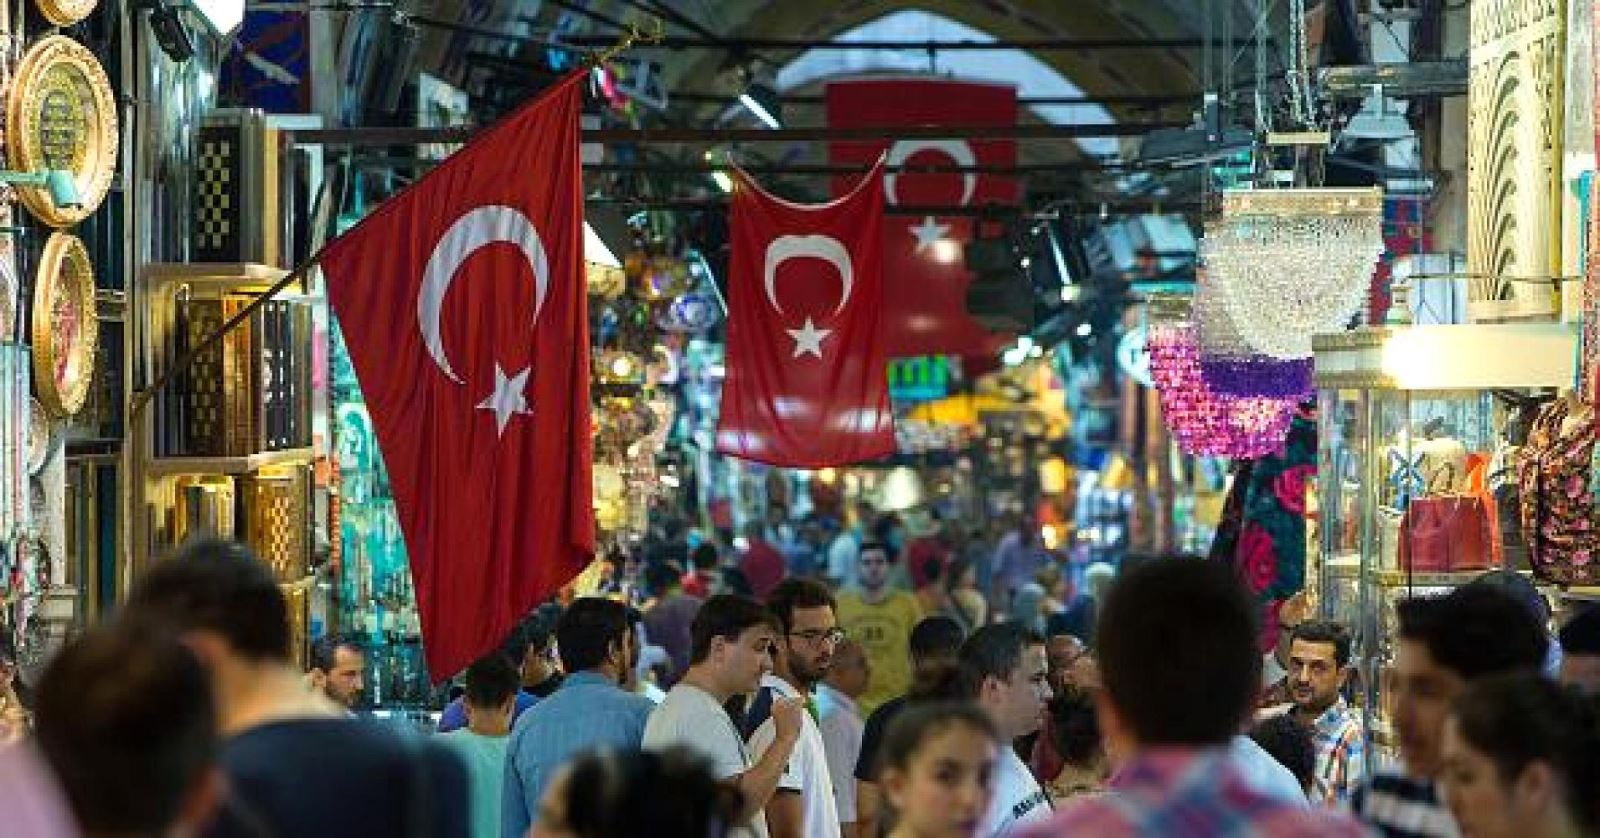 وكالة فيتش تخفض التوقعات لتصنيف تركيا الائتماني